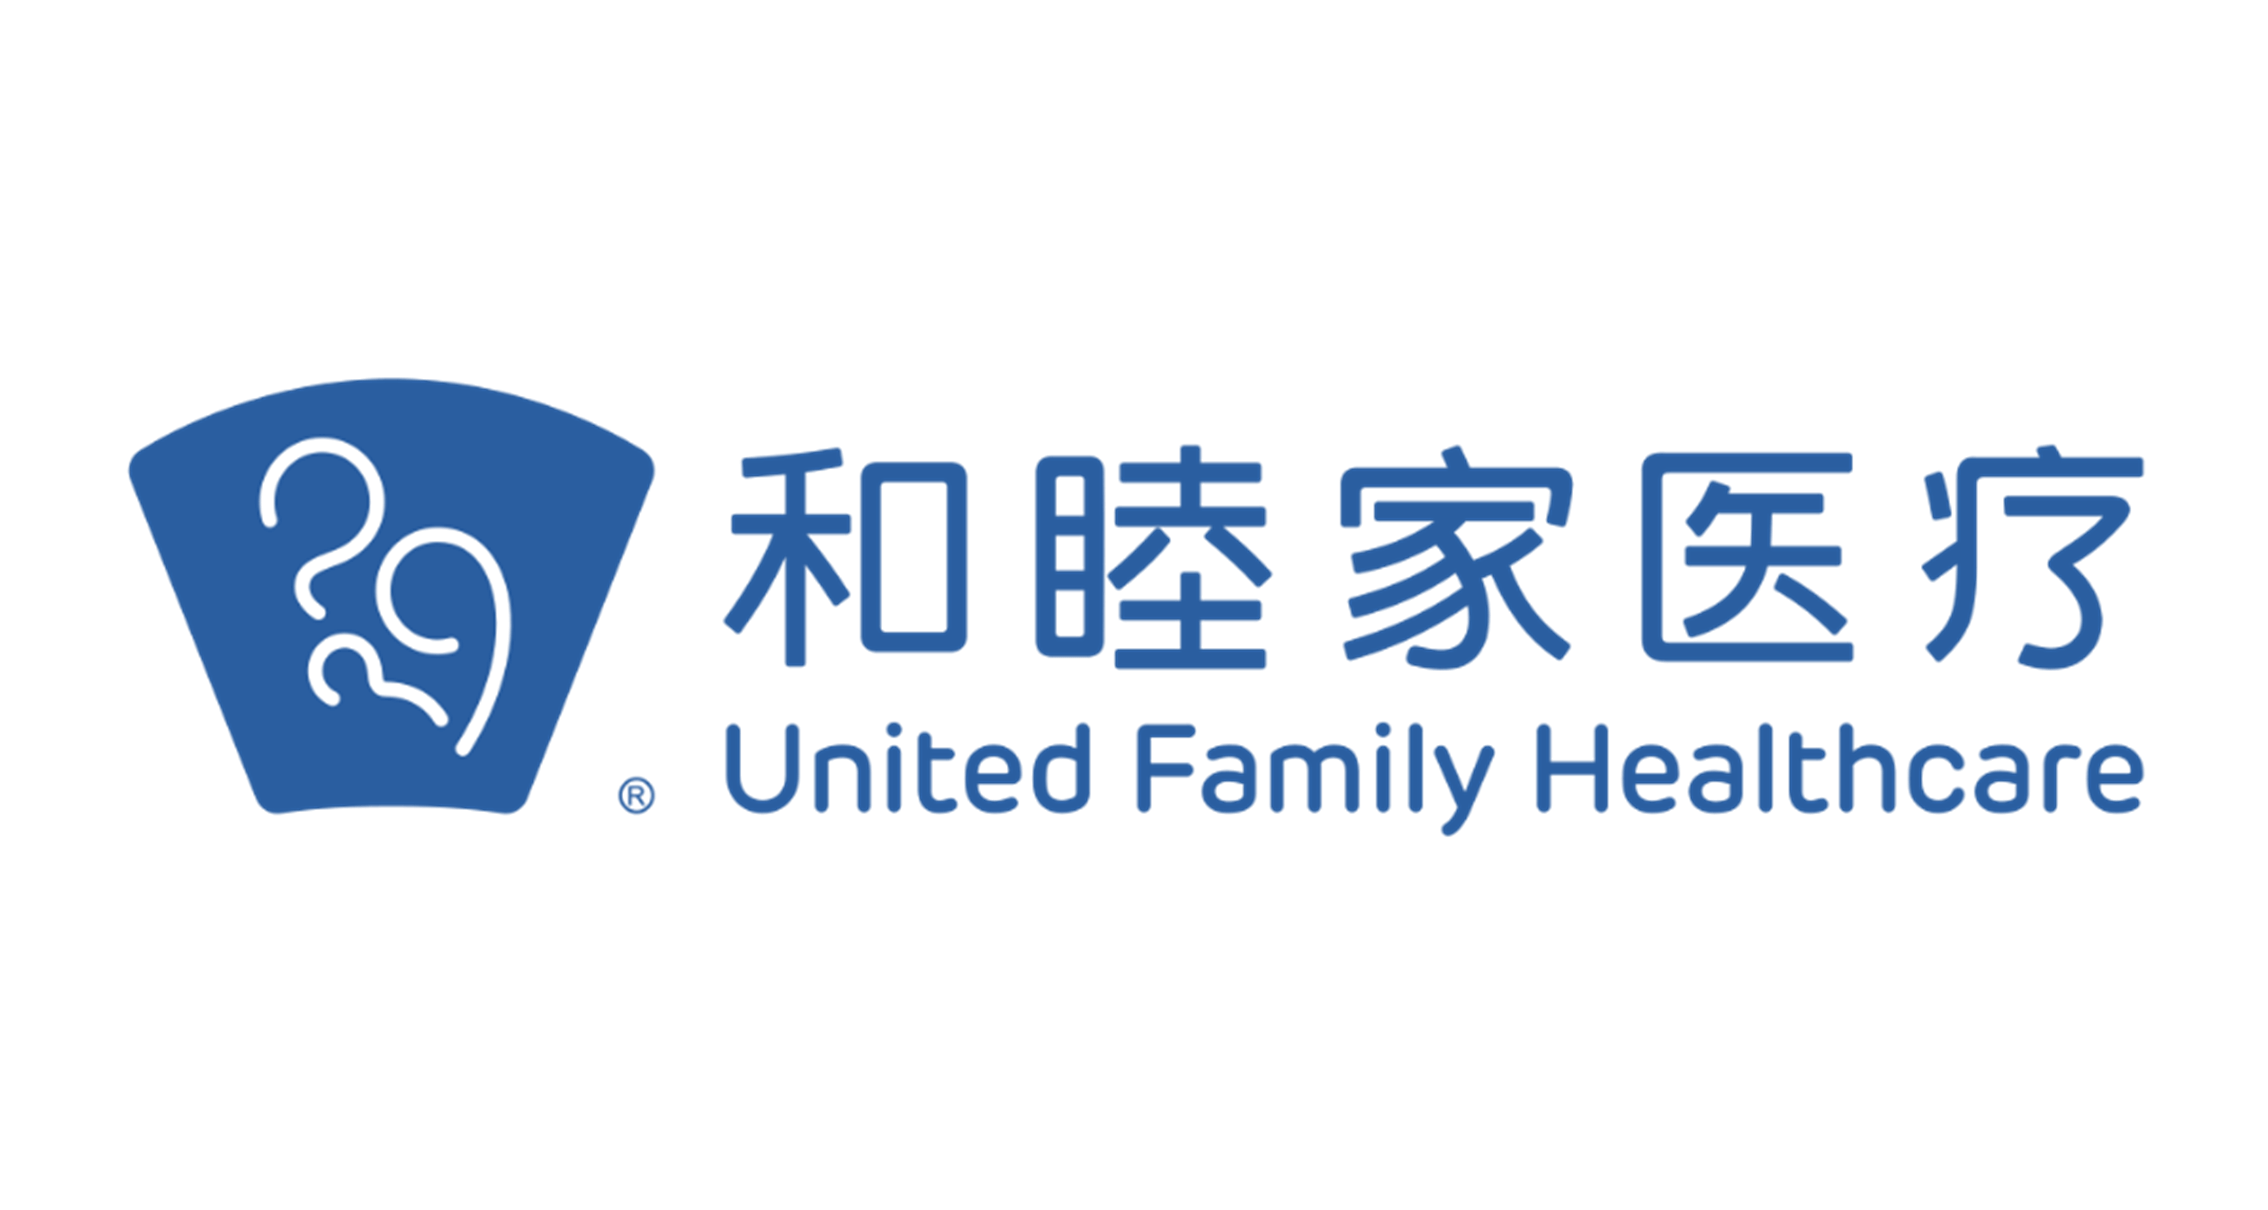 和睦家医疗 United Family Healthcare